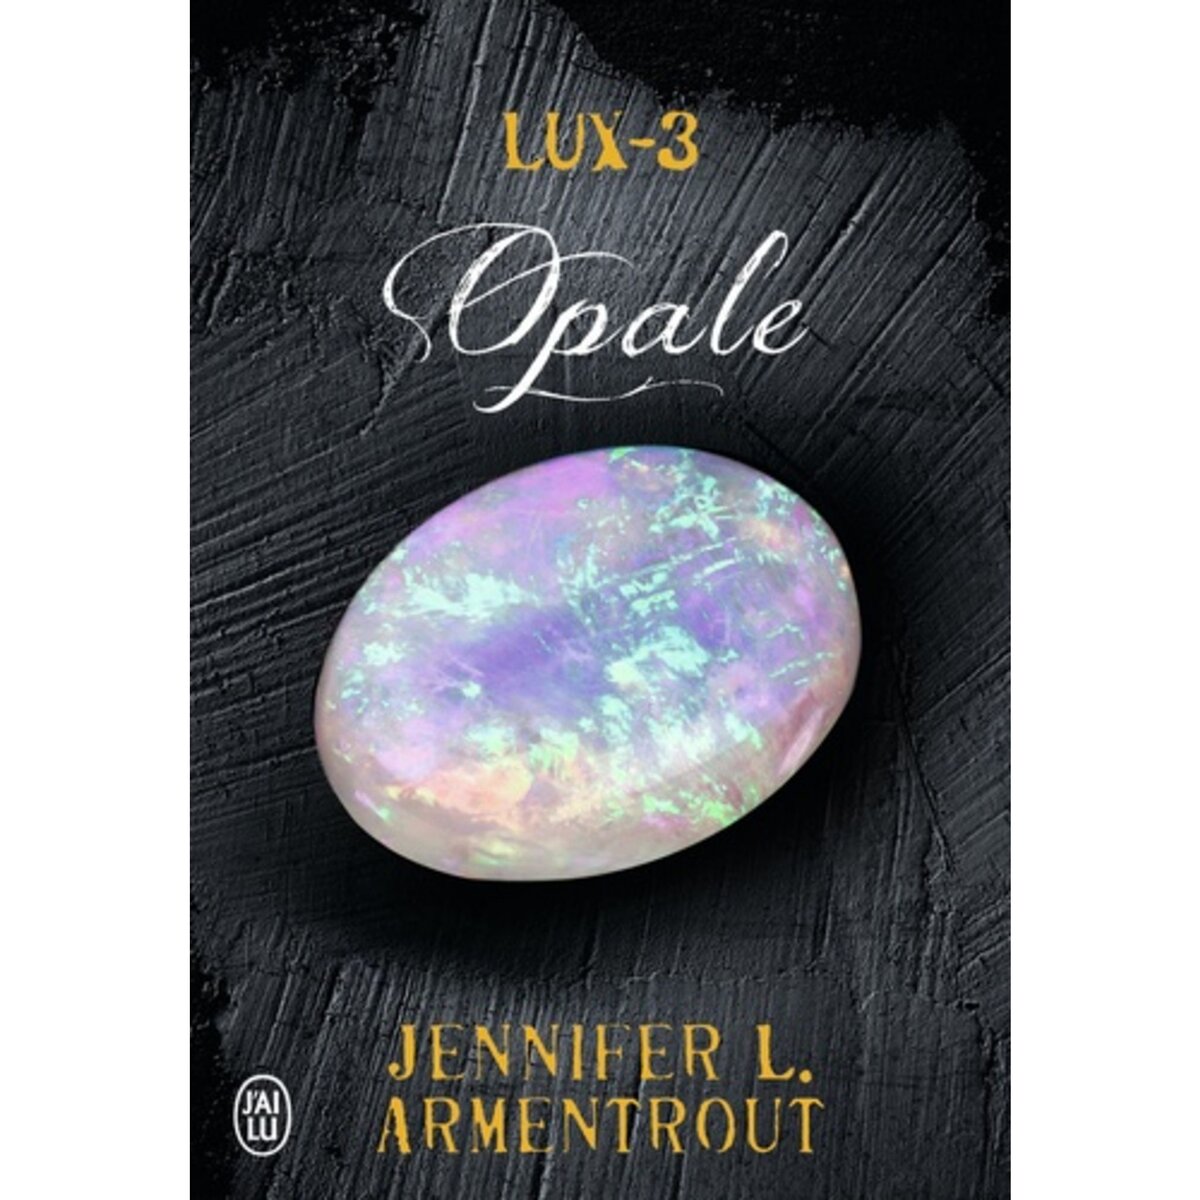  LUX TOME 3 : OPALE, Armentrout Jennifer L.